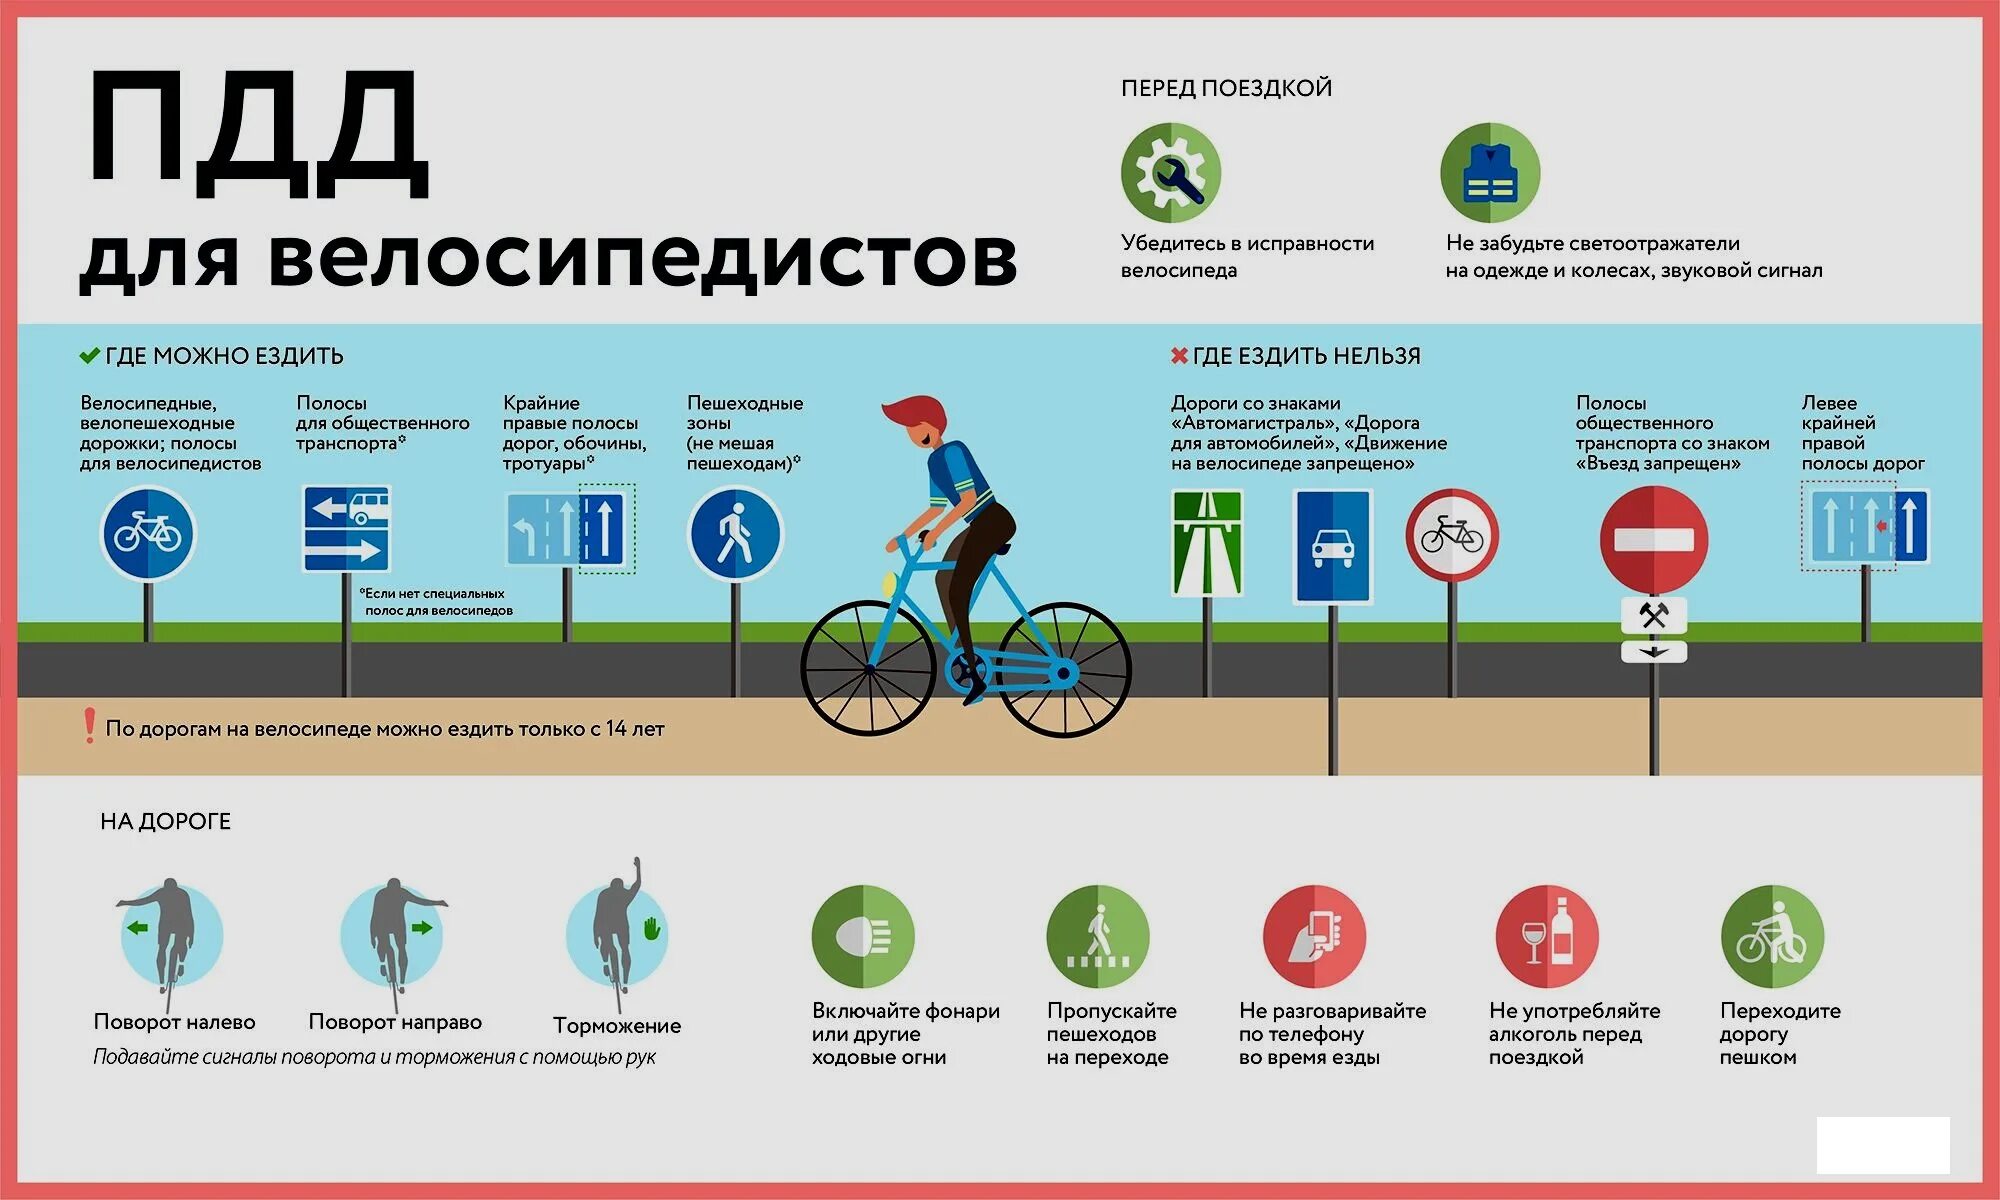 Можно ли гонять. Основные ПДД для велосипедистов. ПДД для велосипеда 2021. Правила движения на велосипеде. Безопасность велосипедиста на дороге.